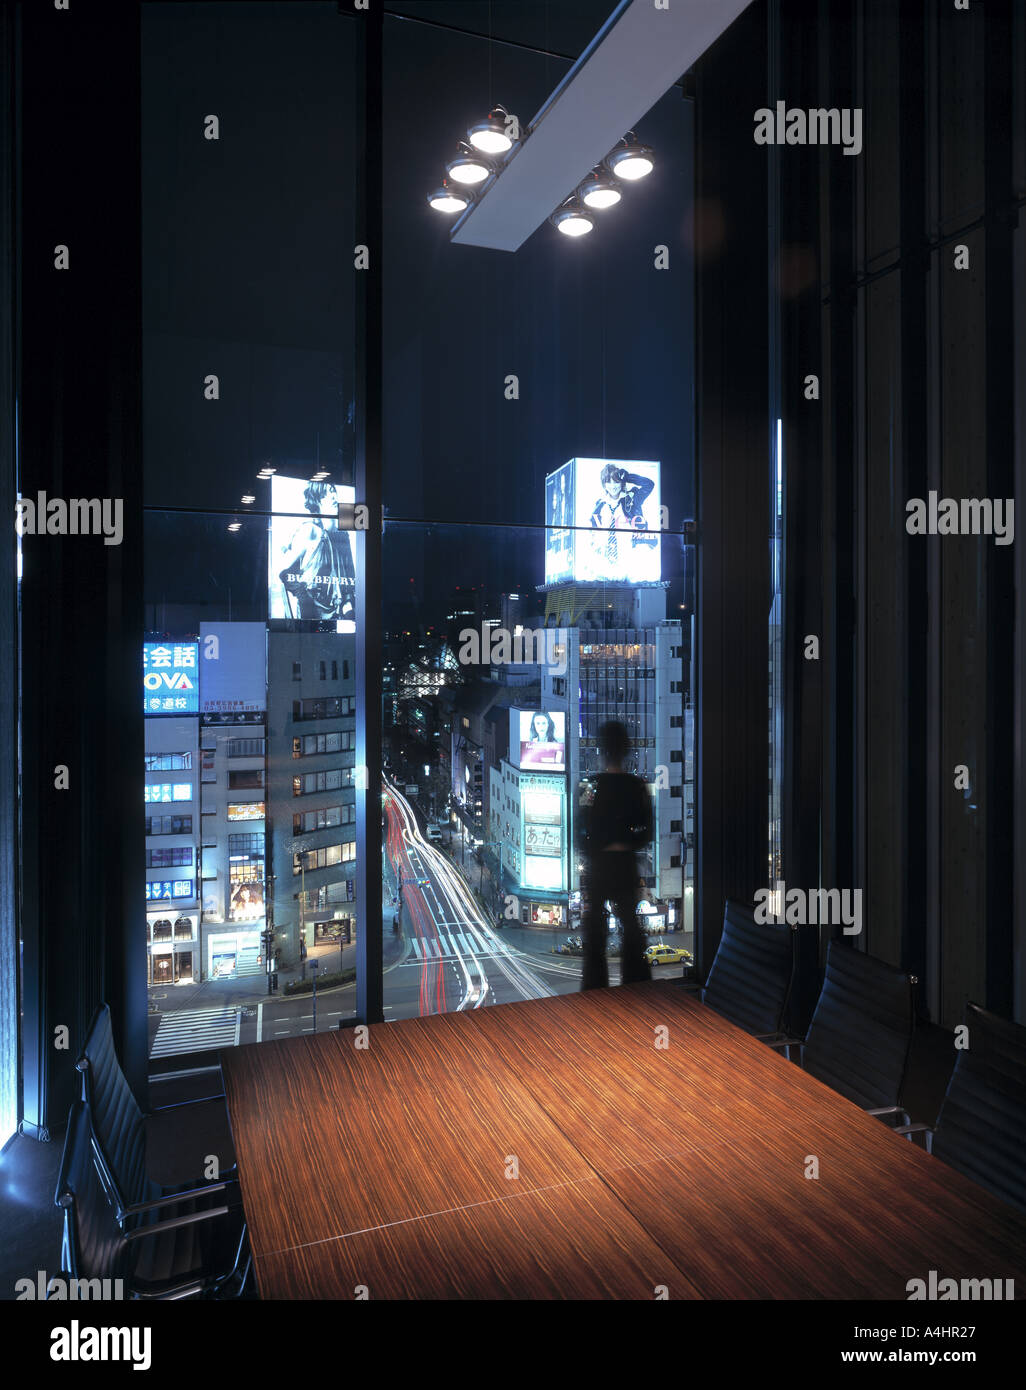 Tokyo - Harajuku: Omotesando- Louis Vuitton, Louis Vuitton …